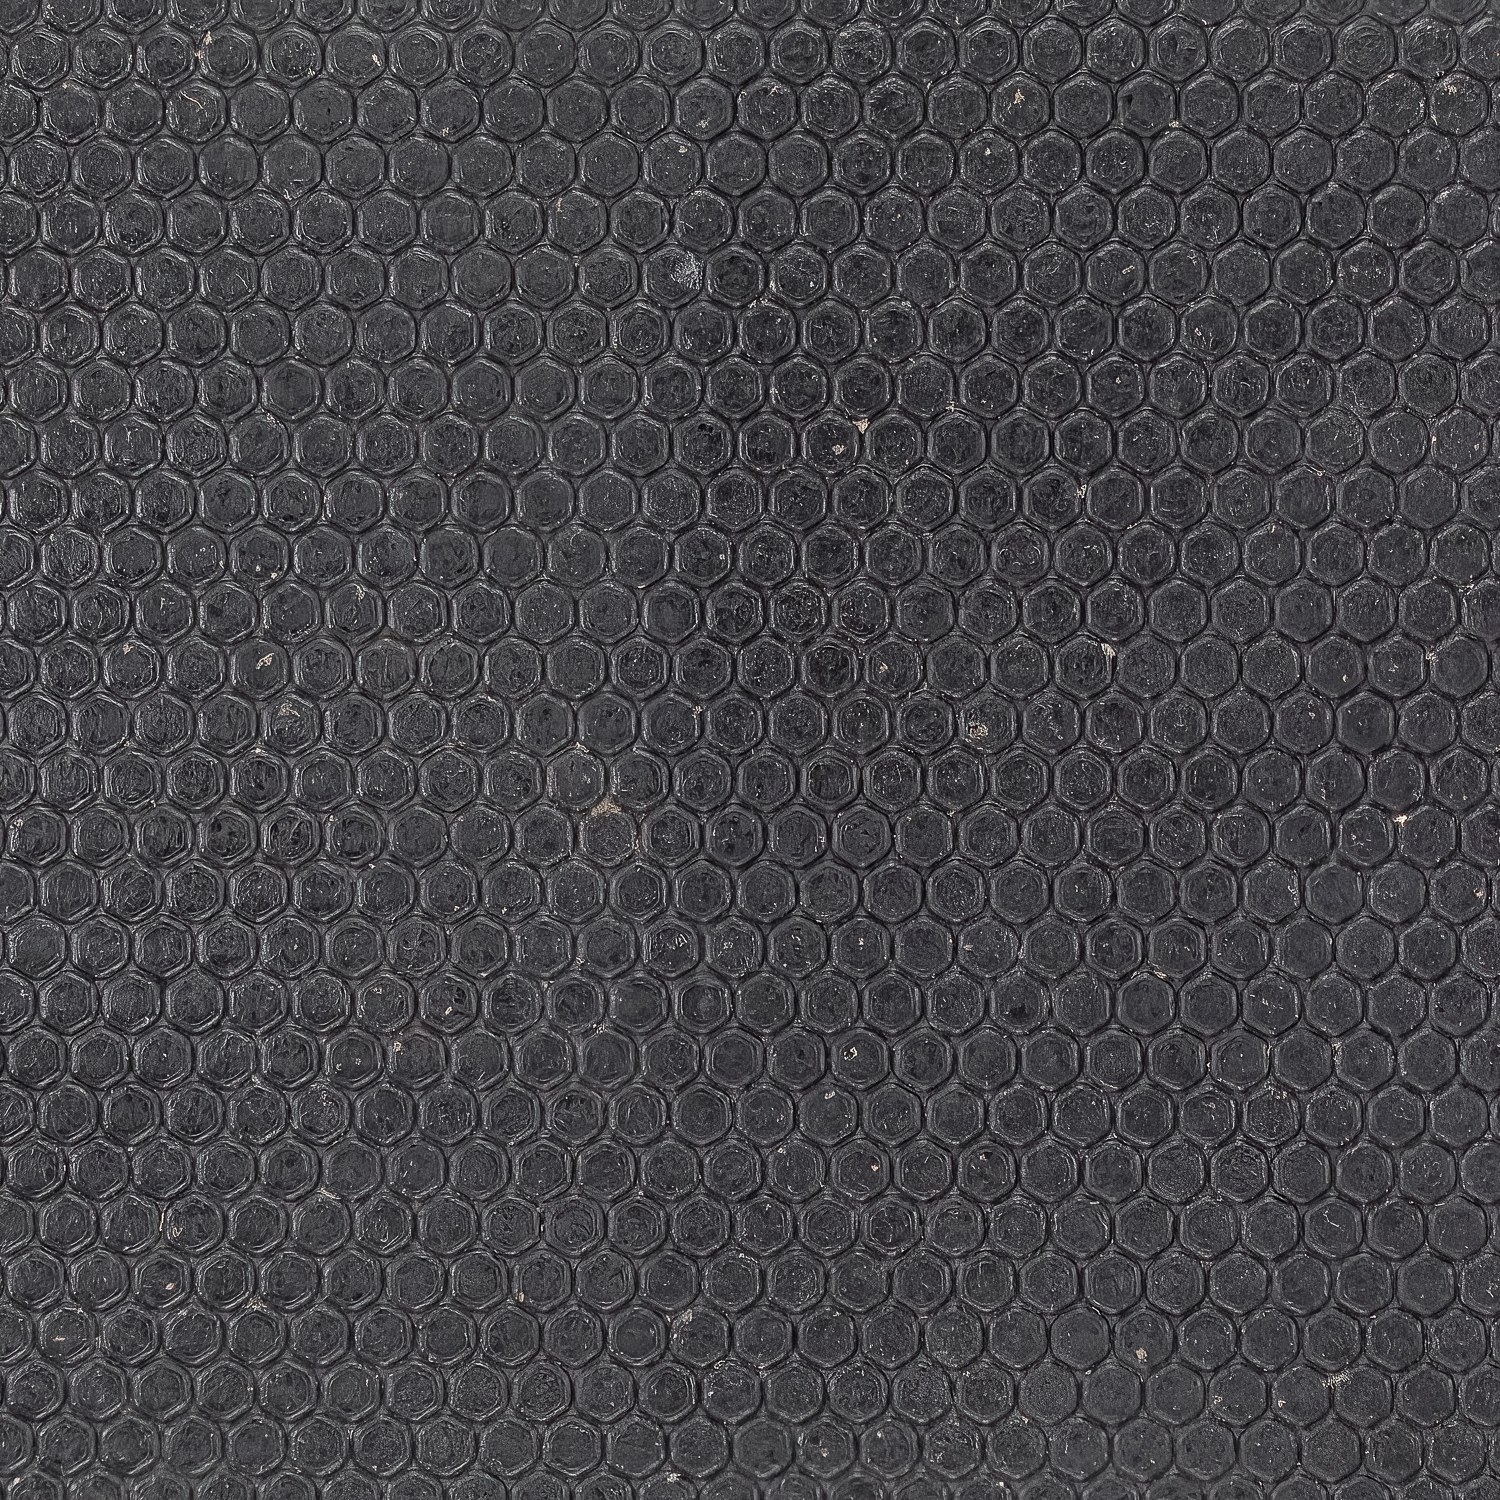 Sundance Horse Stall Mat Kit 10x10 Ft Black full mat hexagon top close up